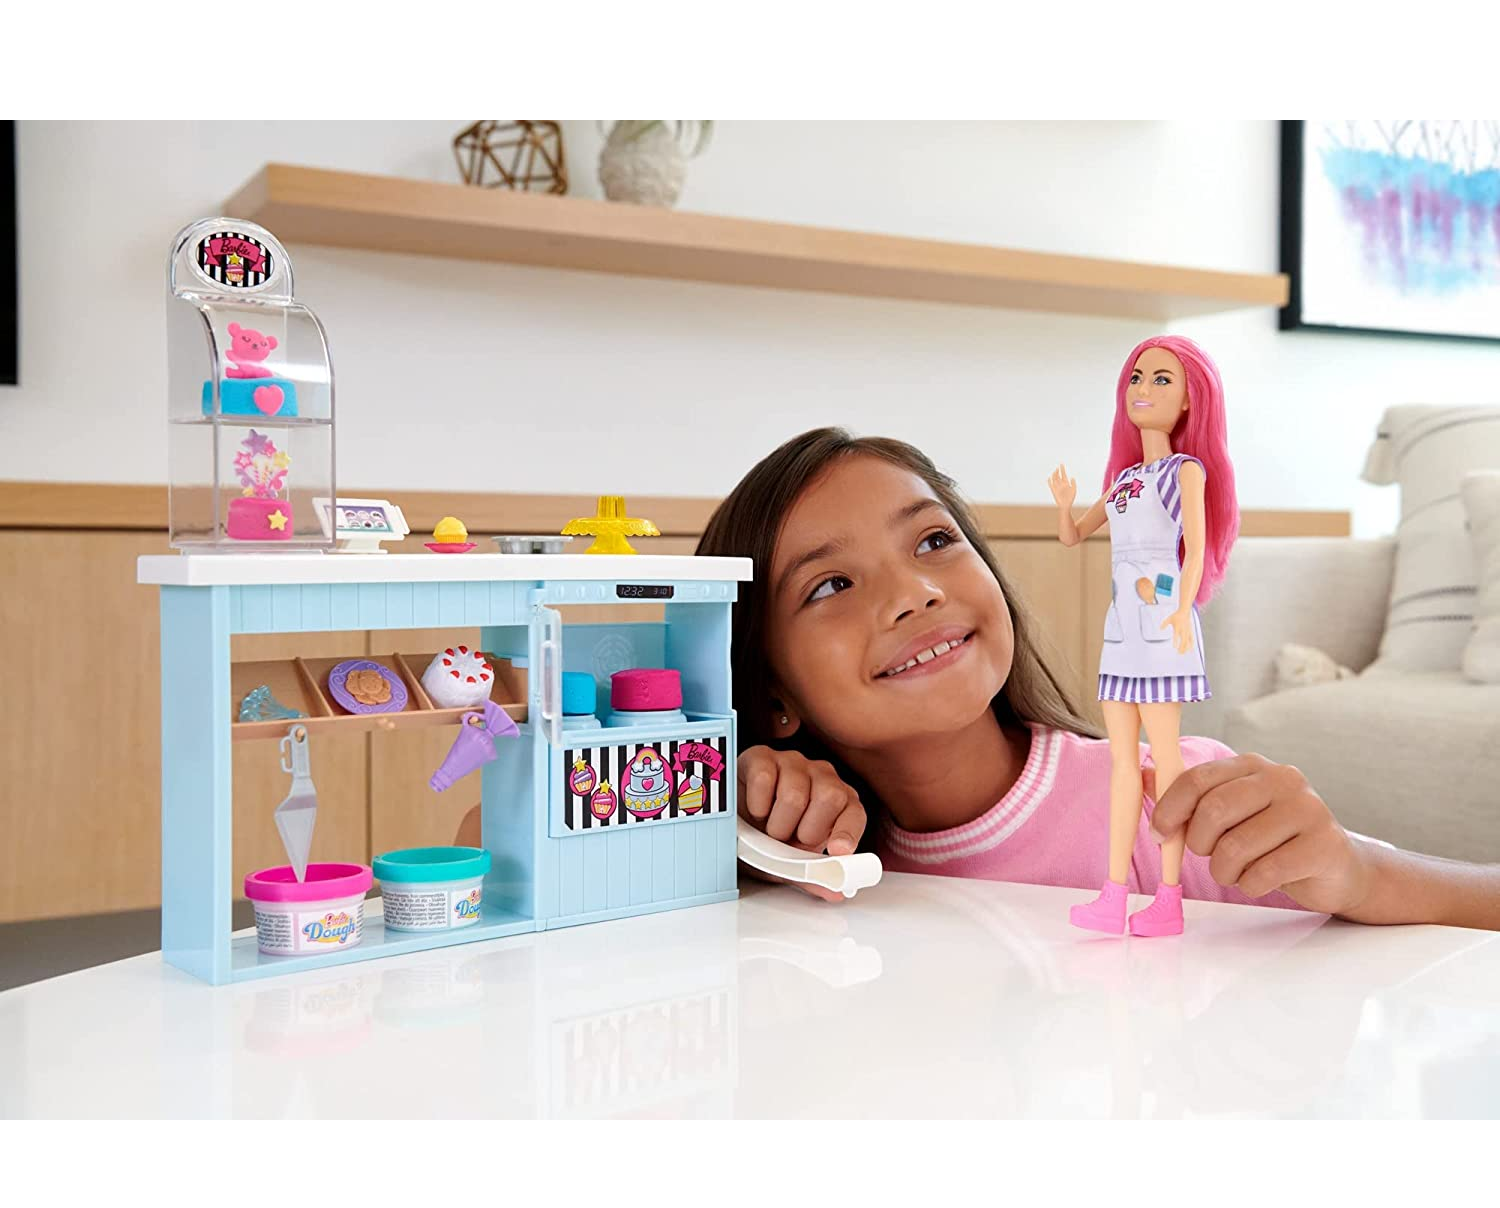 Bolos Decorados: Bolo Decorado Barbie Princesa e Cupcakes